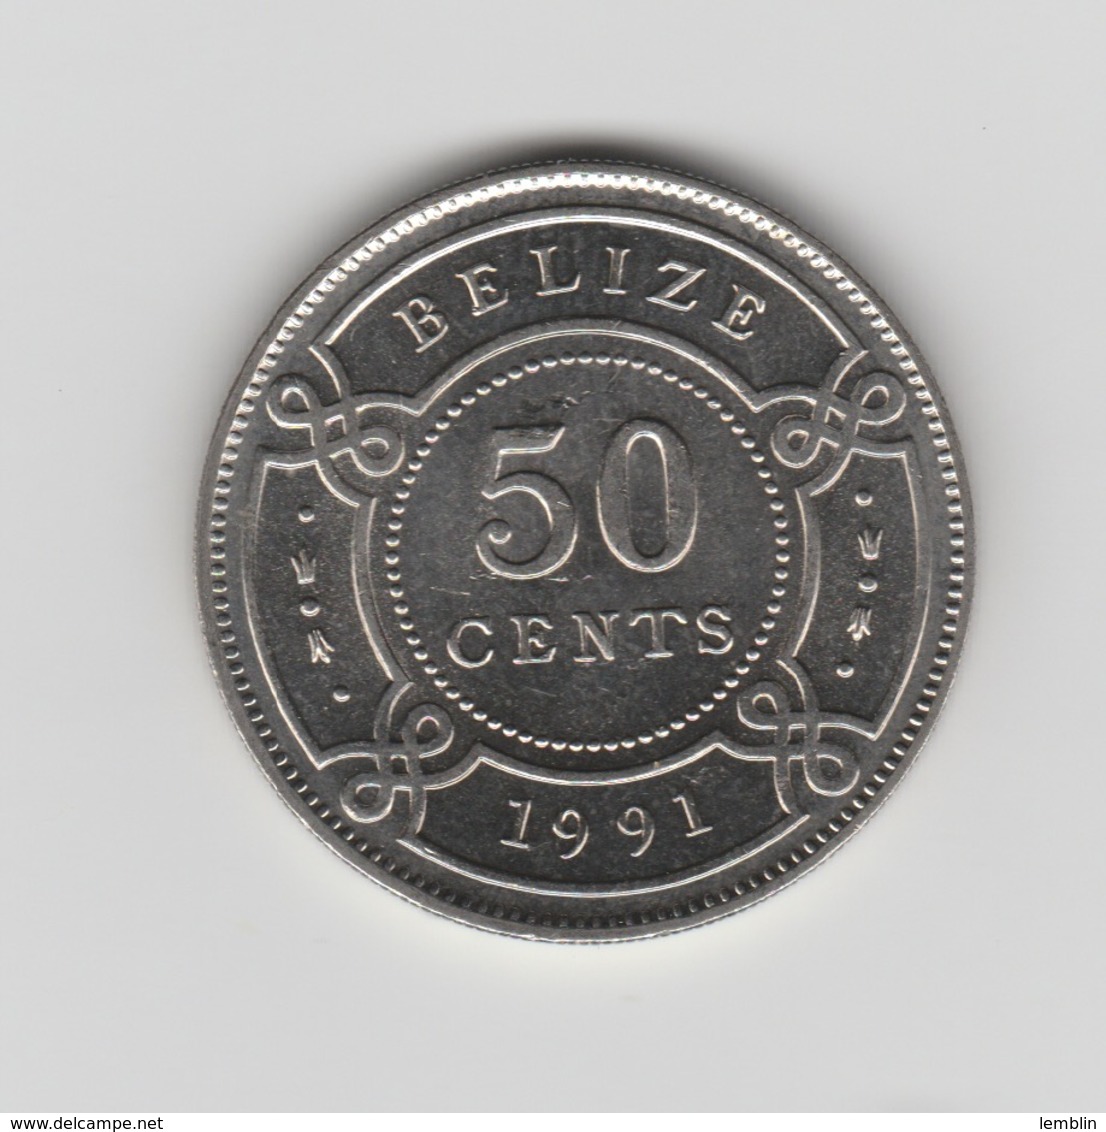 50 CENTS 1991 - Belize